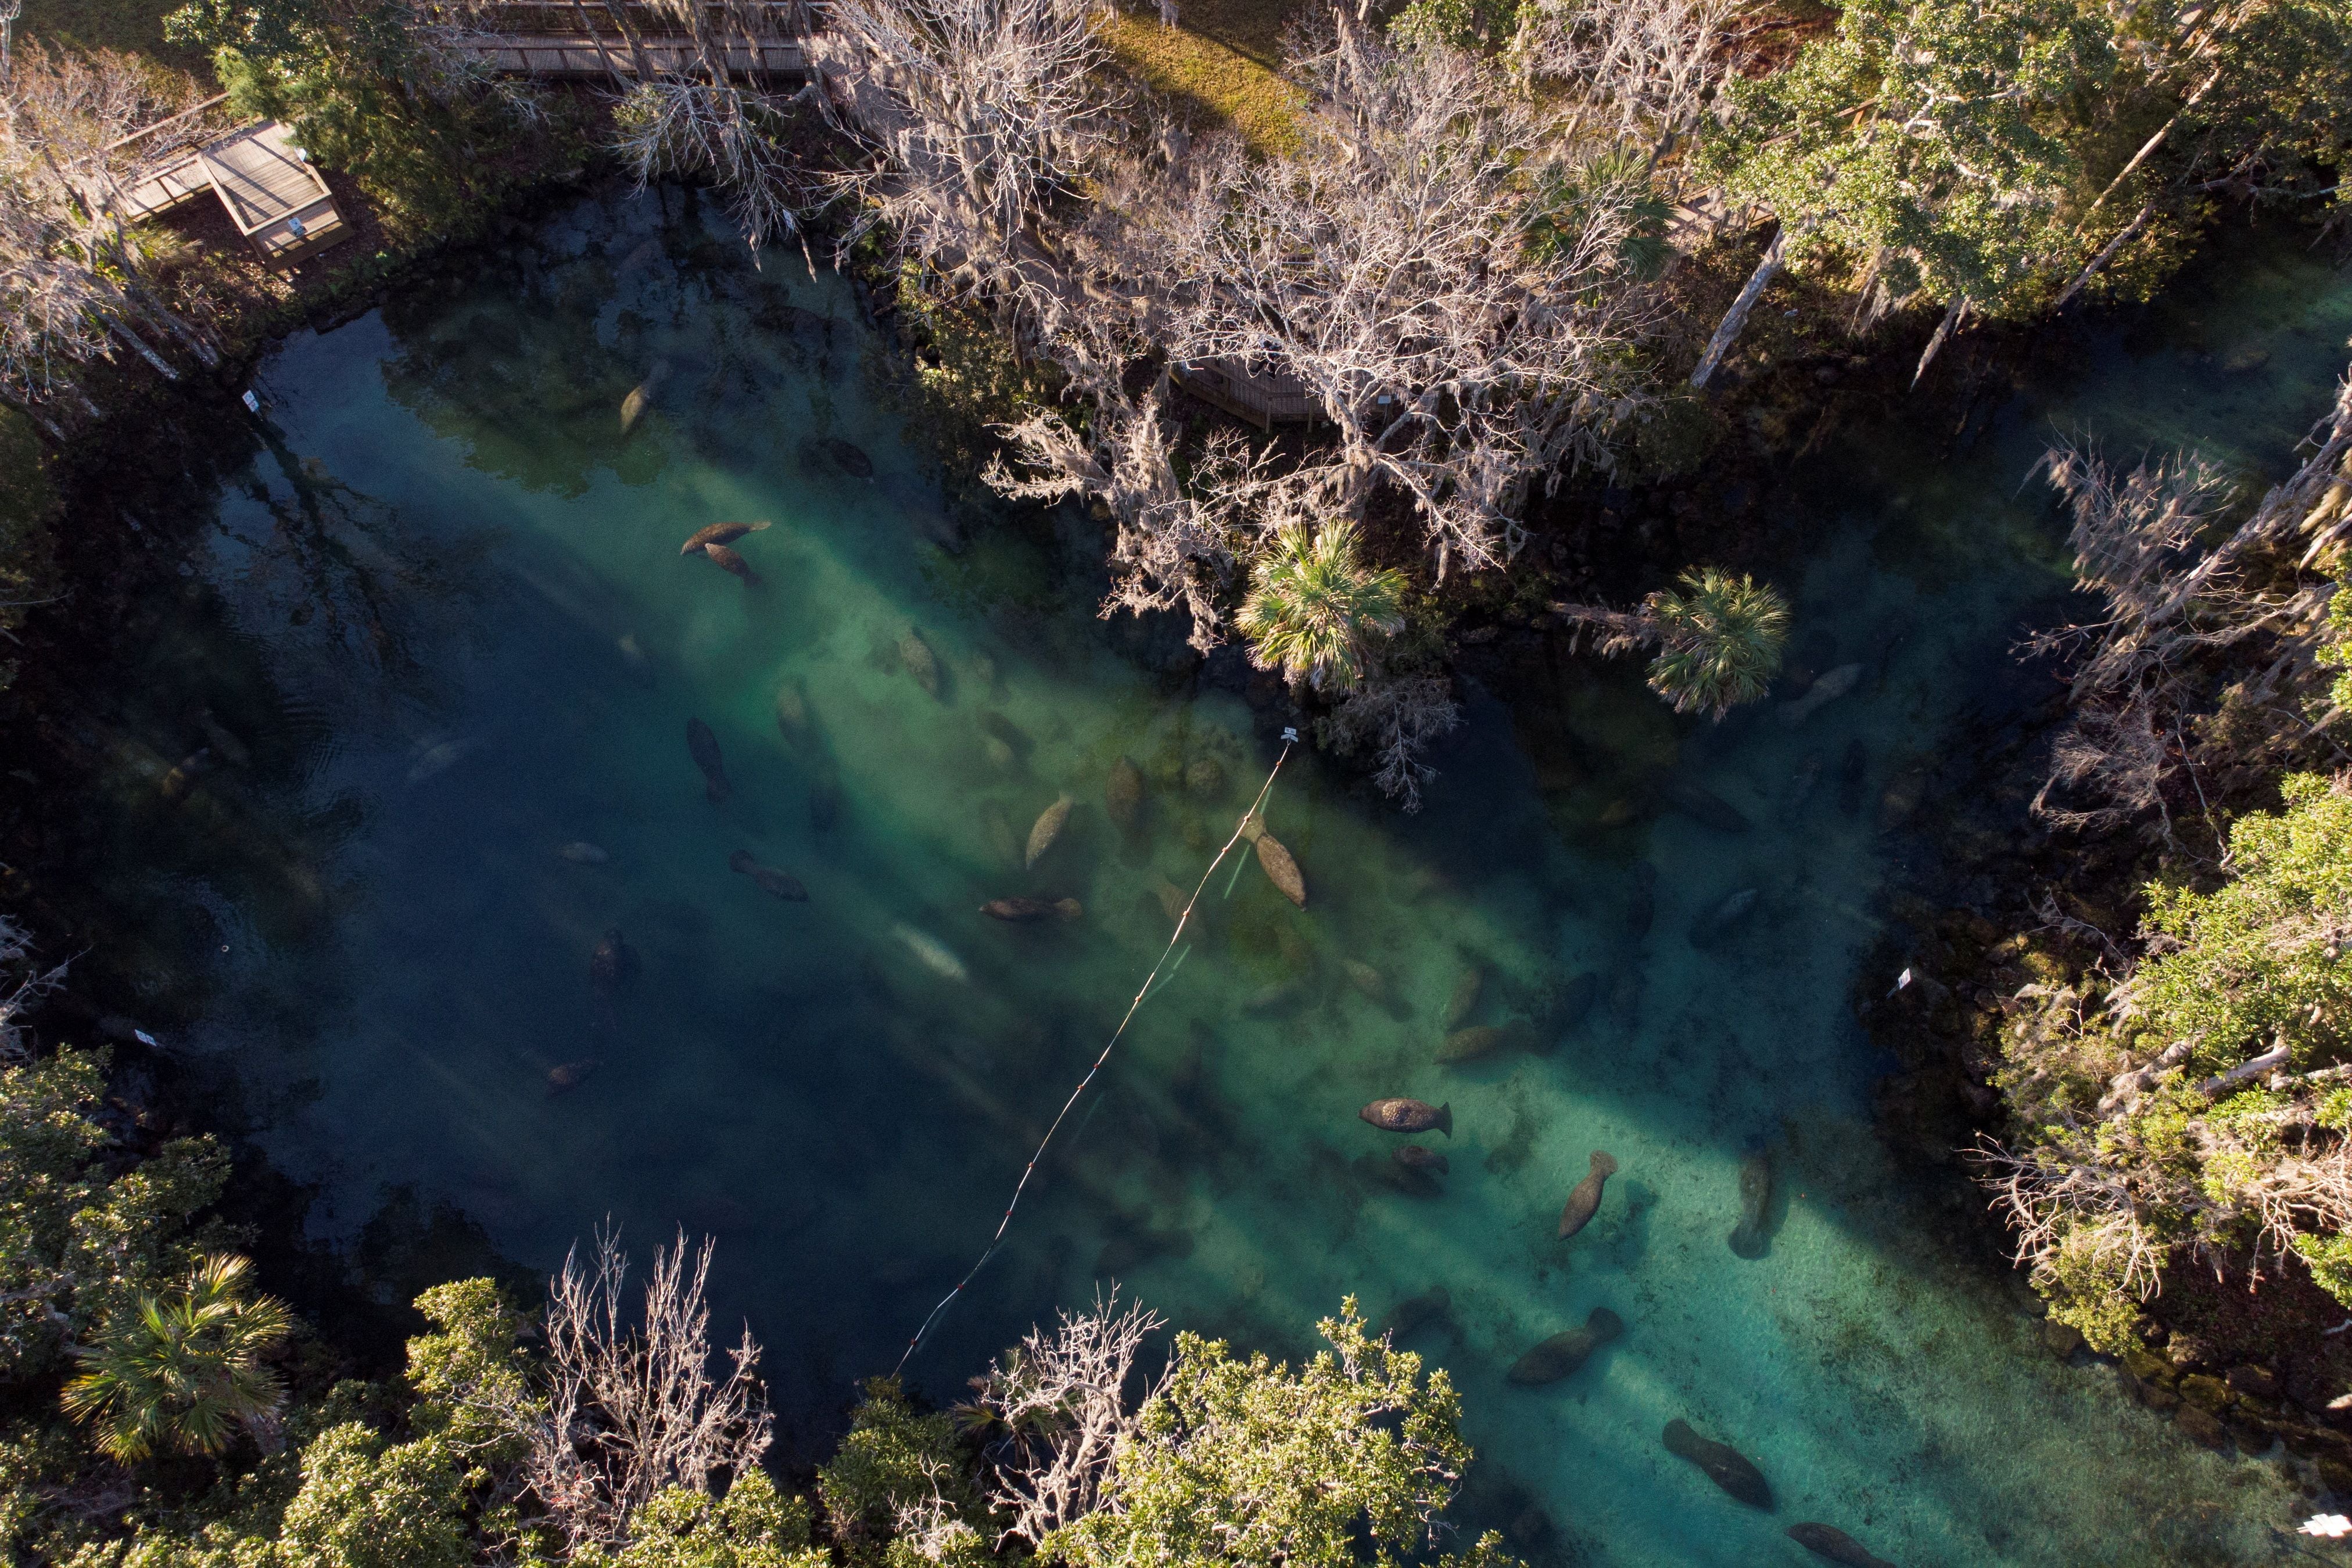 Los refugios de vida silvestre en Florida, donde la conservación de la biodiversidad y la educación ambiental se unen para proteger y destacar la riqueza natural del estado. (REUTERS/Marco Bello)